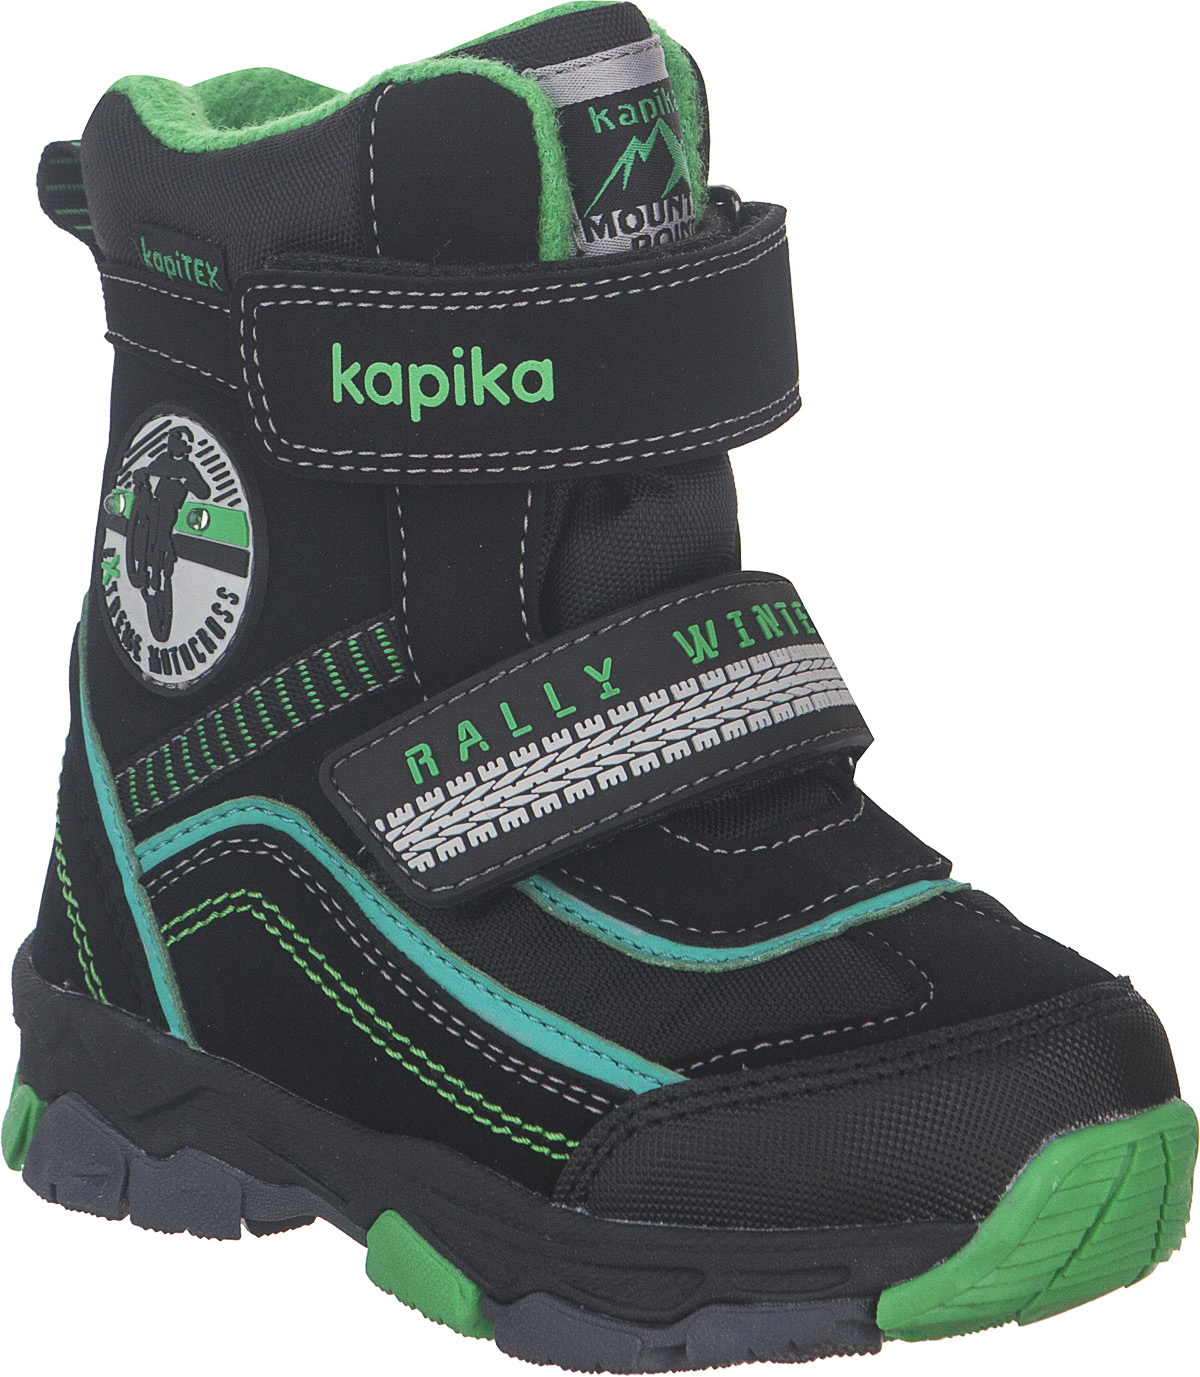 Ботинки для мальчика Kapika KapiTEX, цвет: черный, зеленый. 41230-1. Размер 25